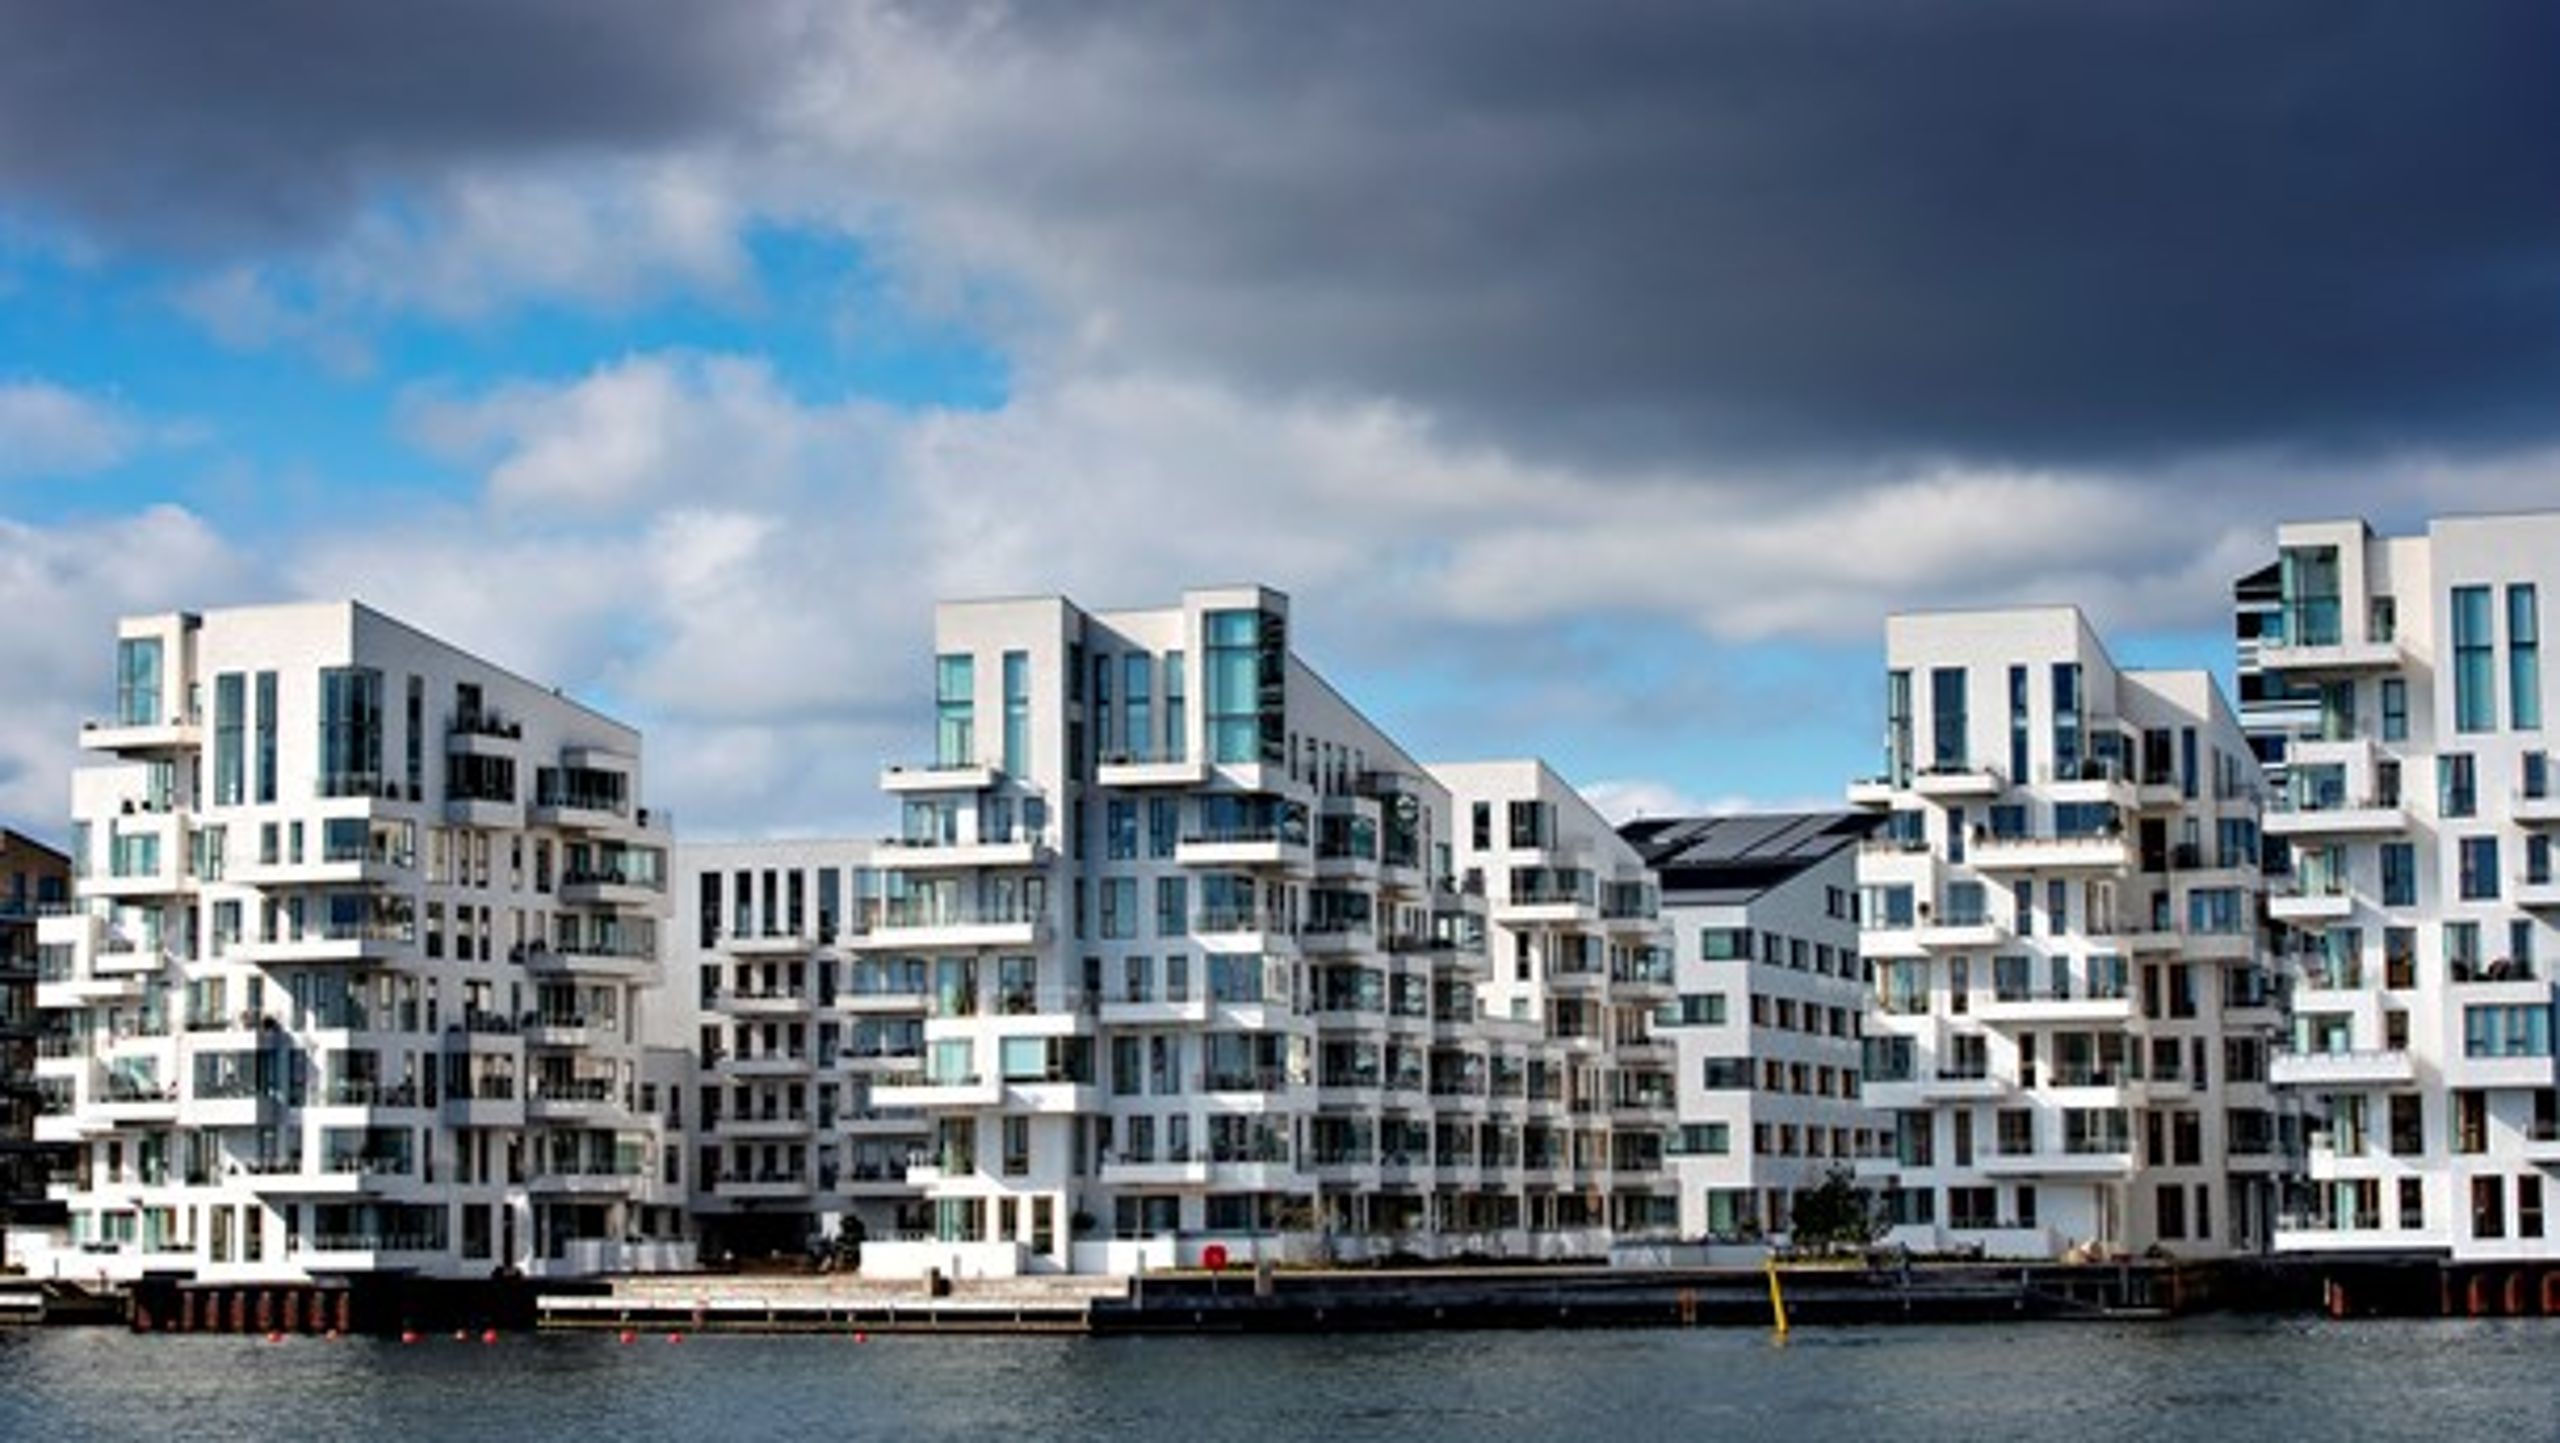 Det nye kvarter Havneholmen i Sydhavnen er som så mange andre attraktive kvarterer i København&nbsp;i fare for at blive reduceret til utrygge hotelområder, mener Frank Jensen.